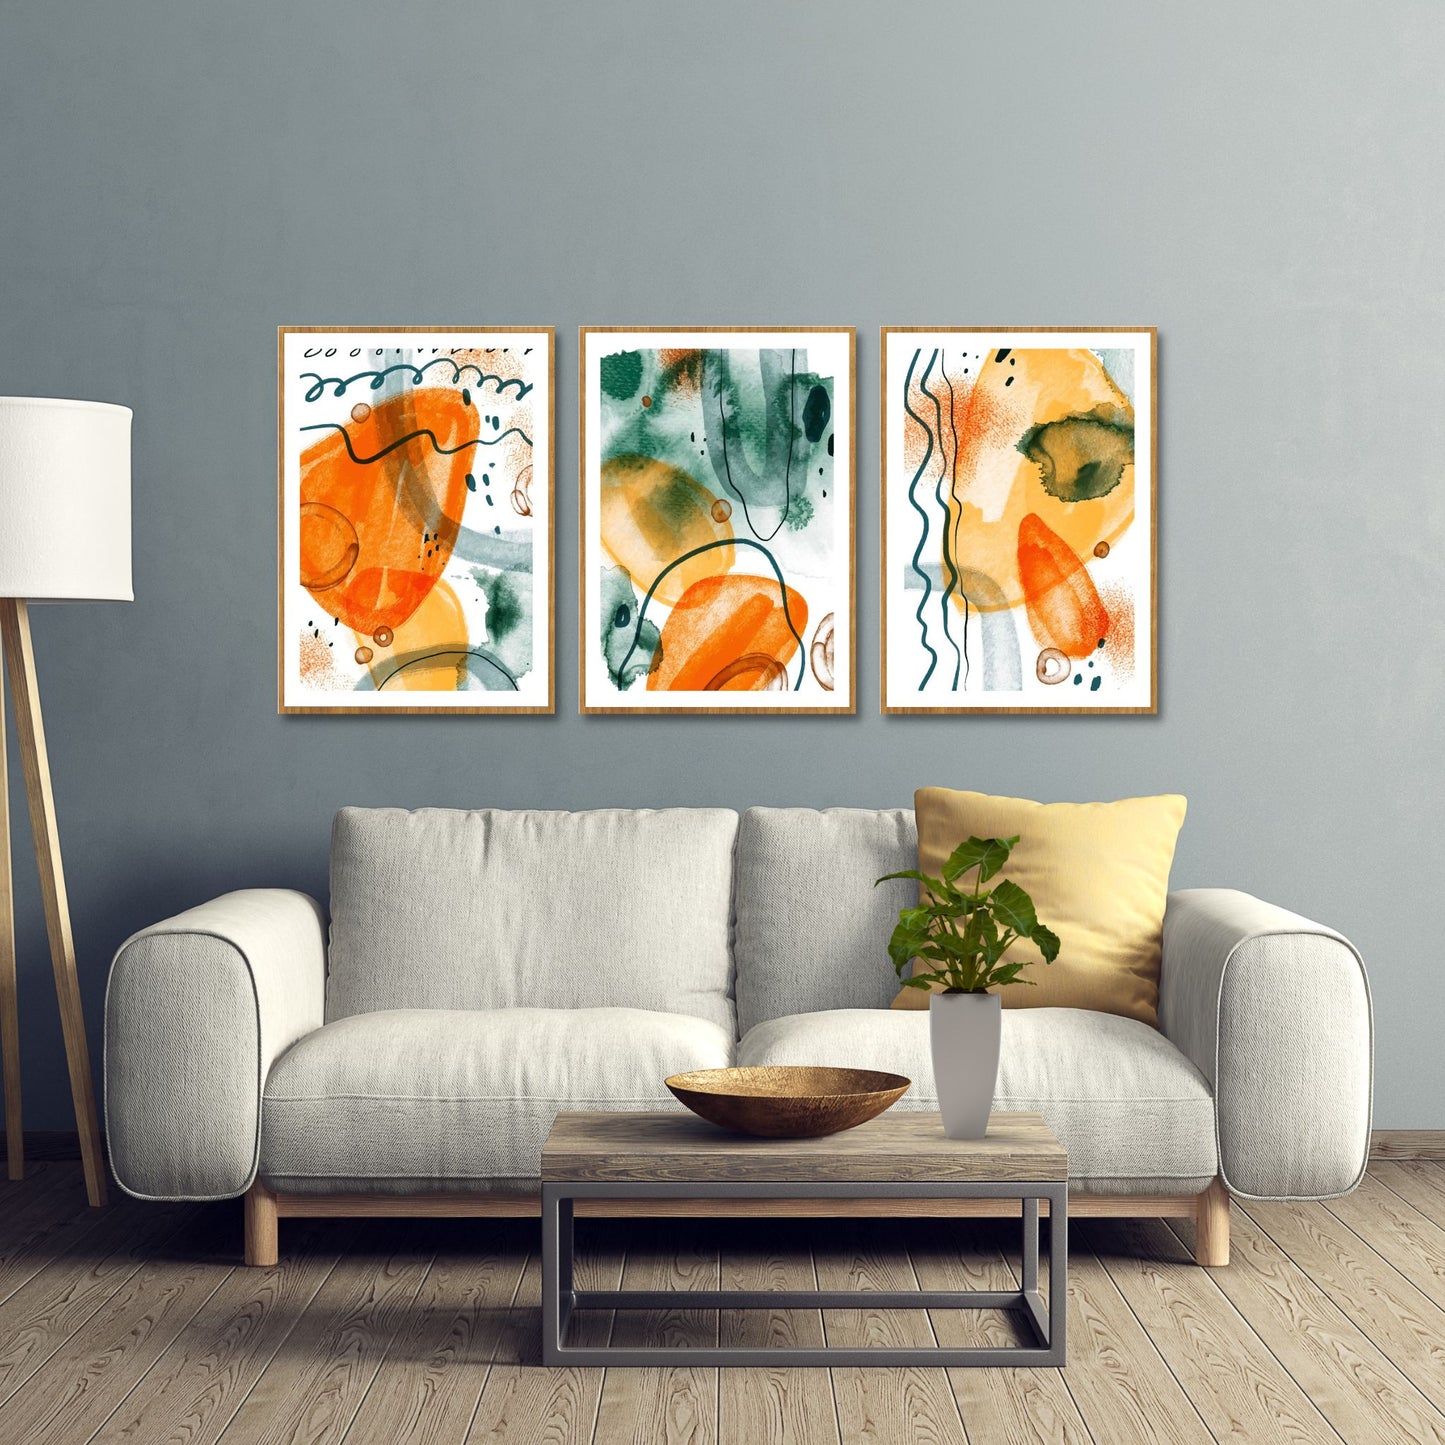 3 grafiske kunst plakater med abstrakt mønster. Fargenyanser i oransje og grønn på hvit bunn. Bildet viser plakater på en vegg, hengende over en beige sofa.